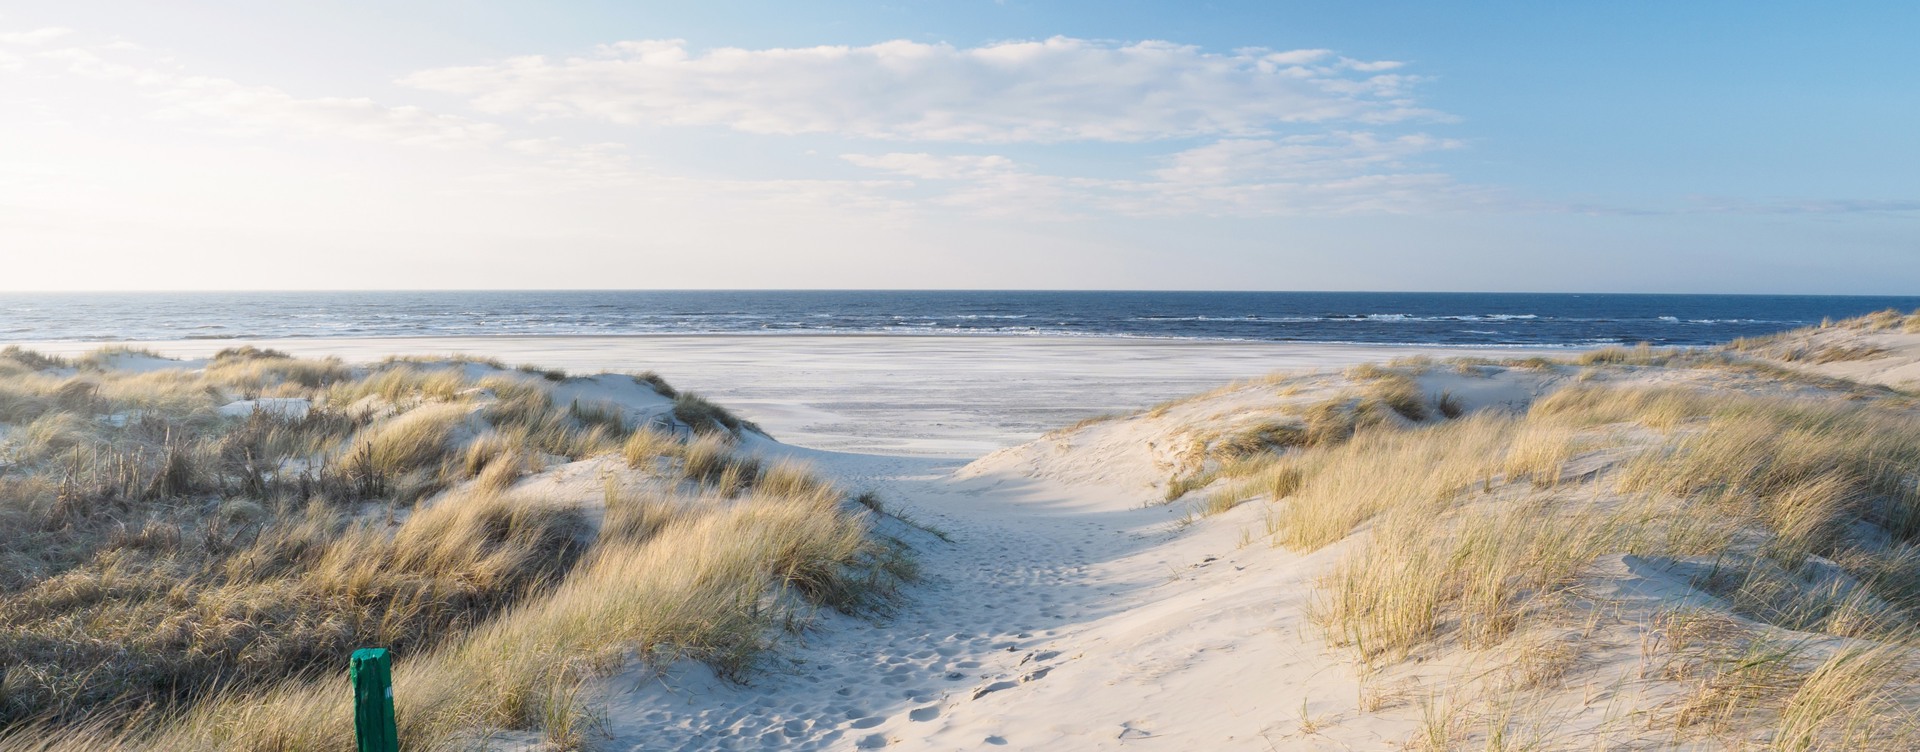 Erleben Sie einen unvergesslichen Urlaub 
an der Küste Zeelands